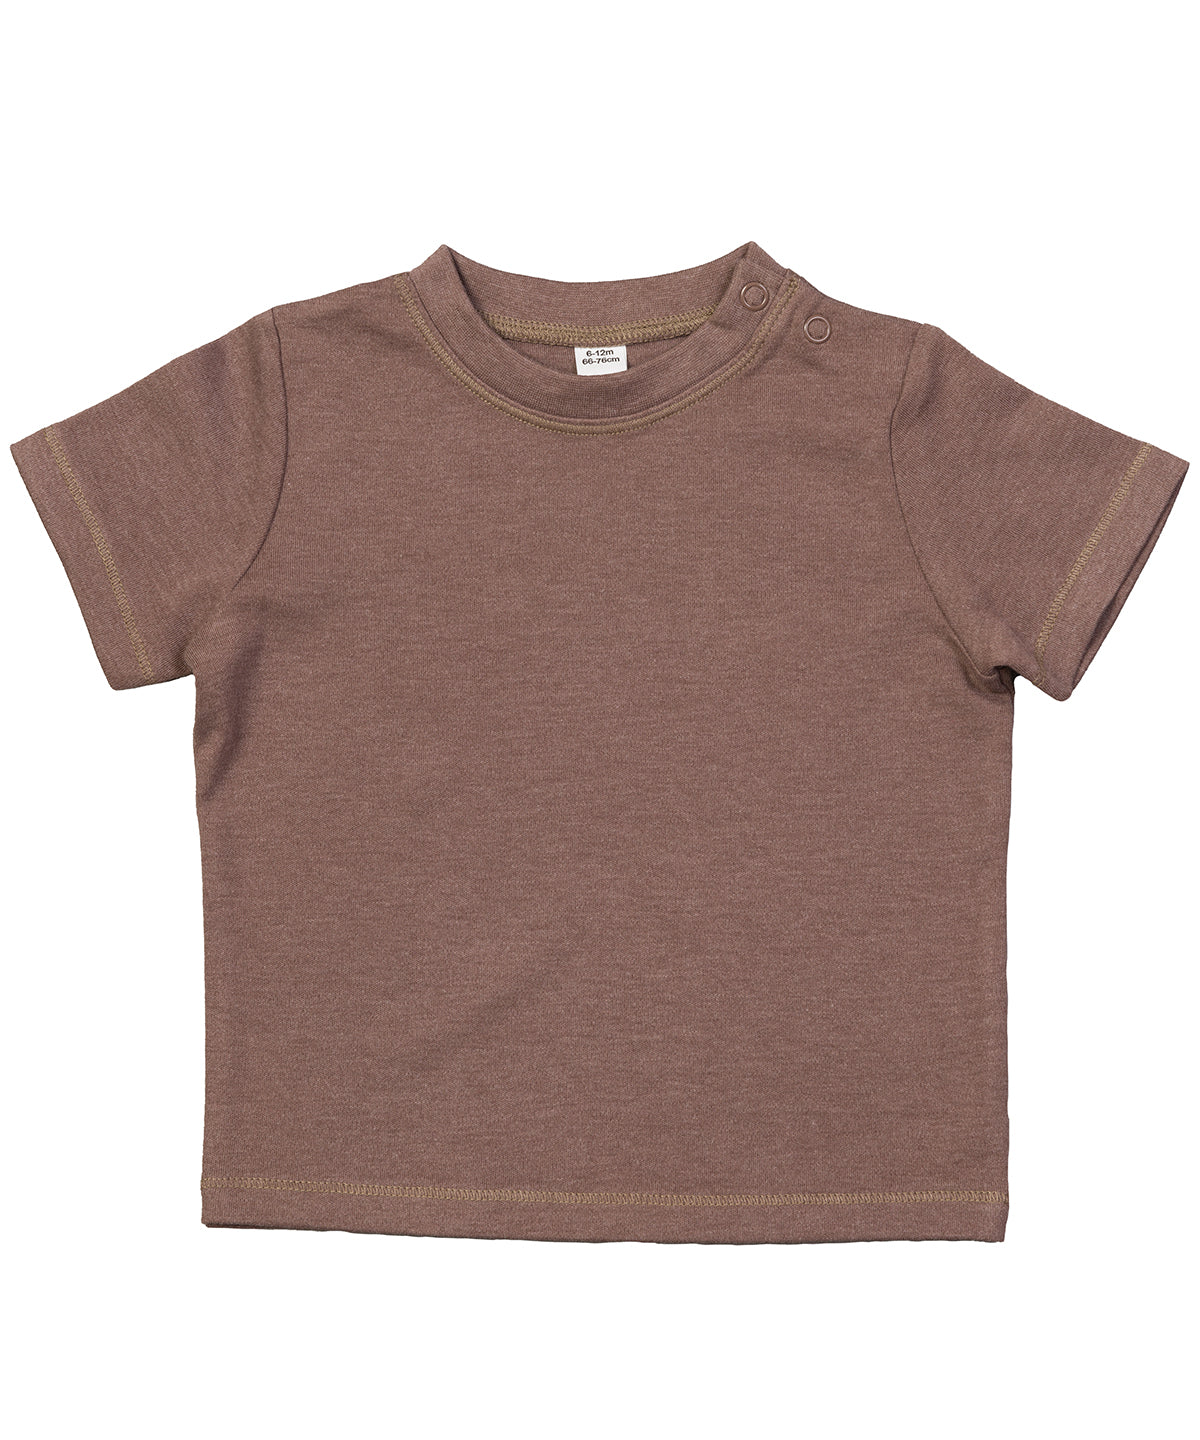 Personalised T-Shirts - Burgundy Babybugz Baby T